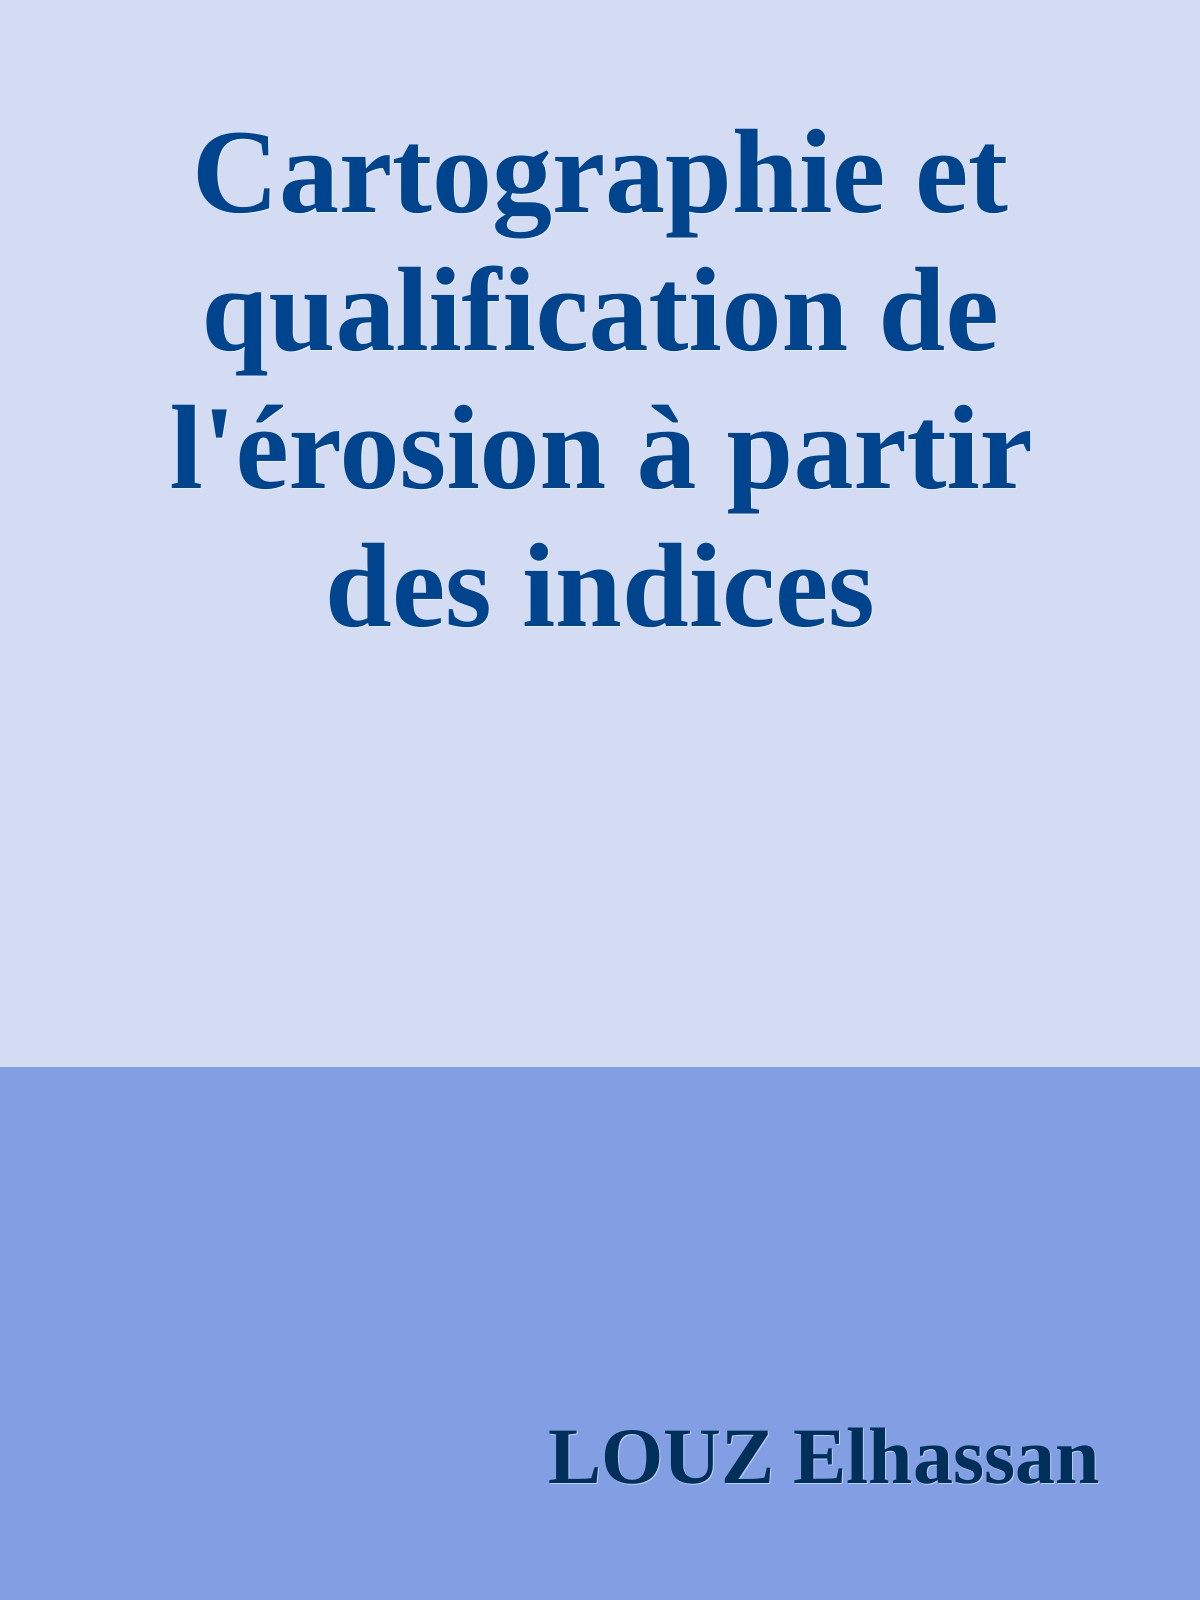 Cartographie et qualification de l'érosion à partir des indices spéctraux: application au sous bassin versant de l'Oued Sania (Nord du Maroc)